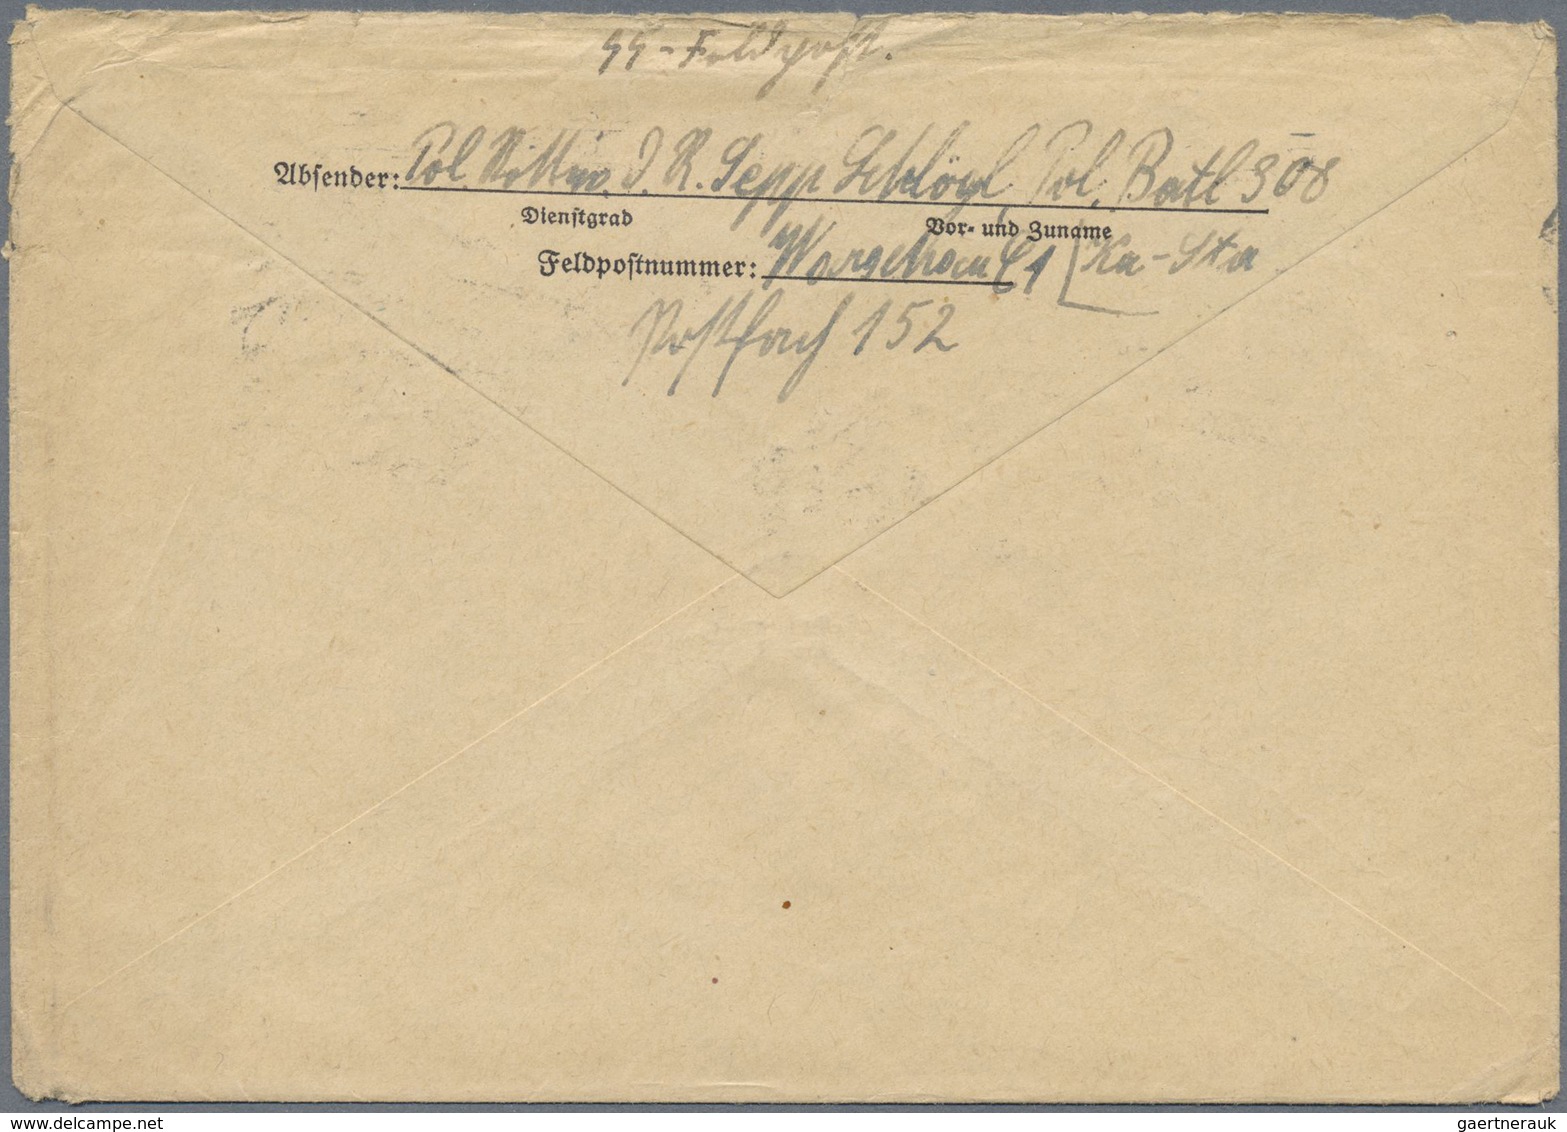 Ghetto-Post: 1941, vier SS-Briefe eines Angehörigen des Polizei-Batl. 308 von April-Juni 1941 mit Di